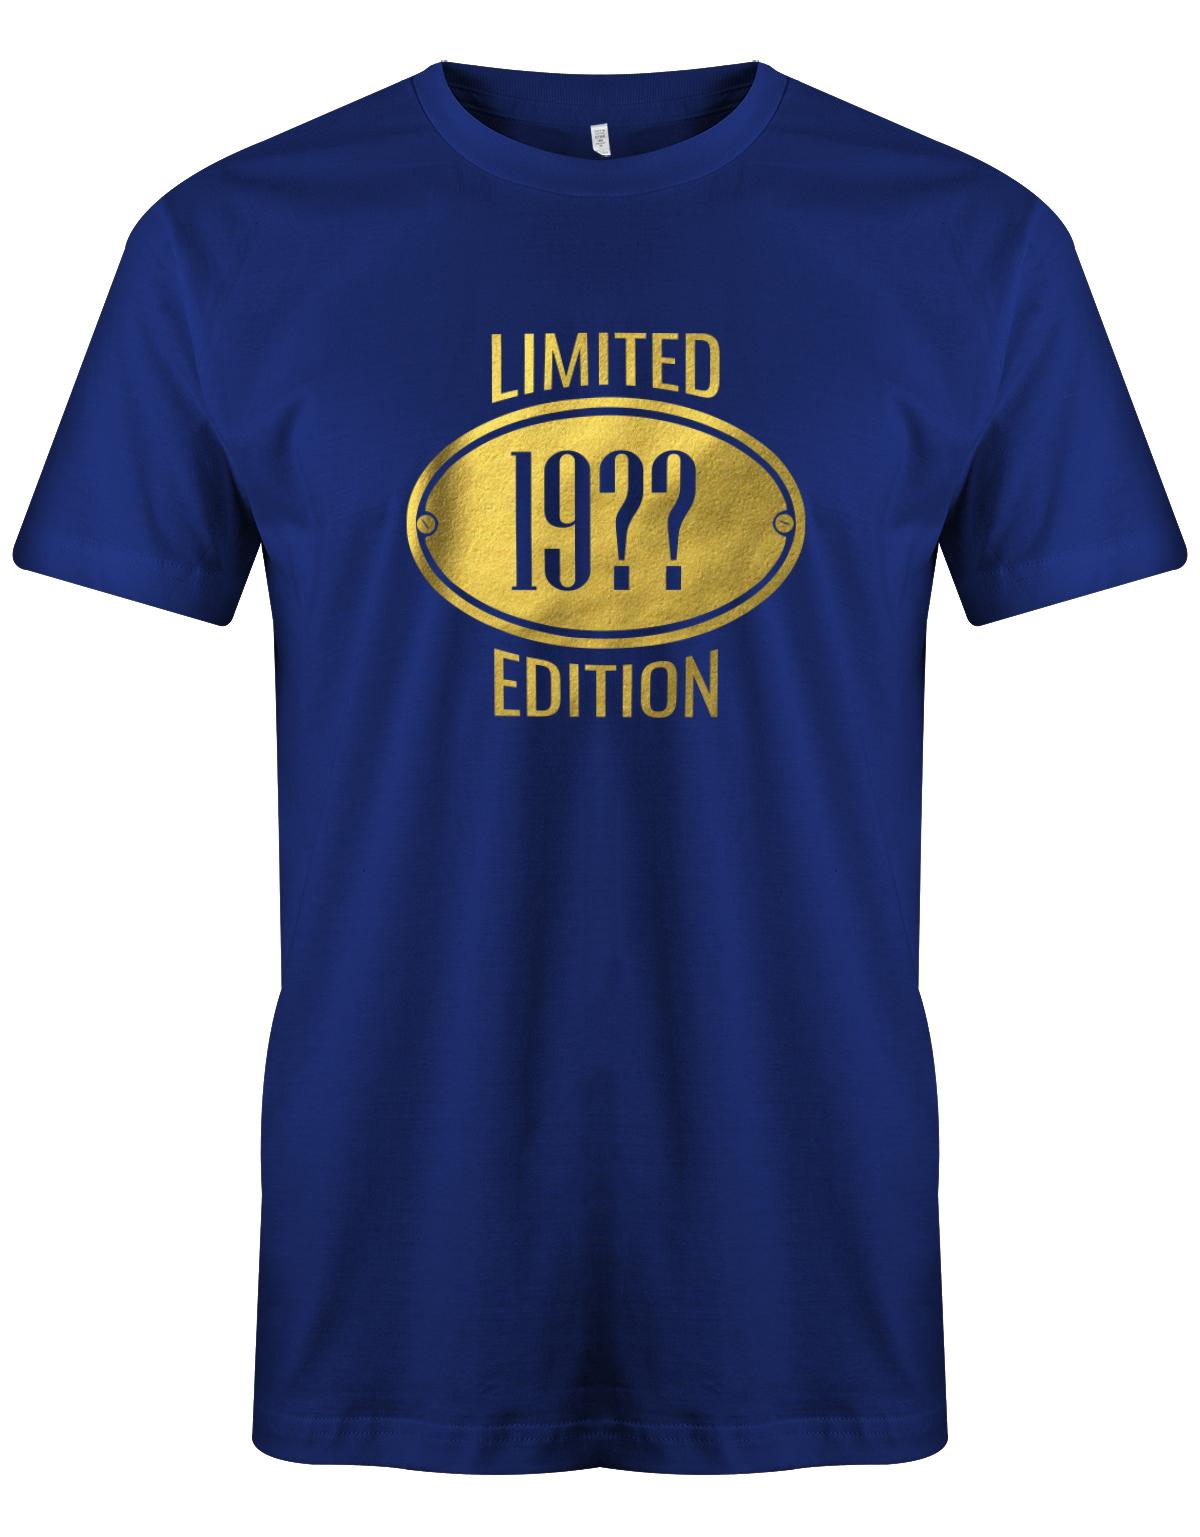 Limited-Edition-Gold-Schild-Herren-geburtstag-Shirt-Royalblau